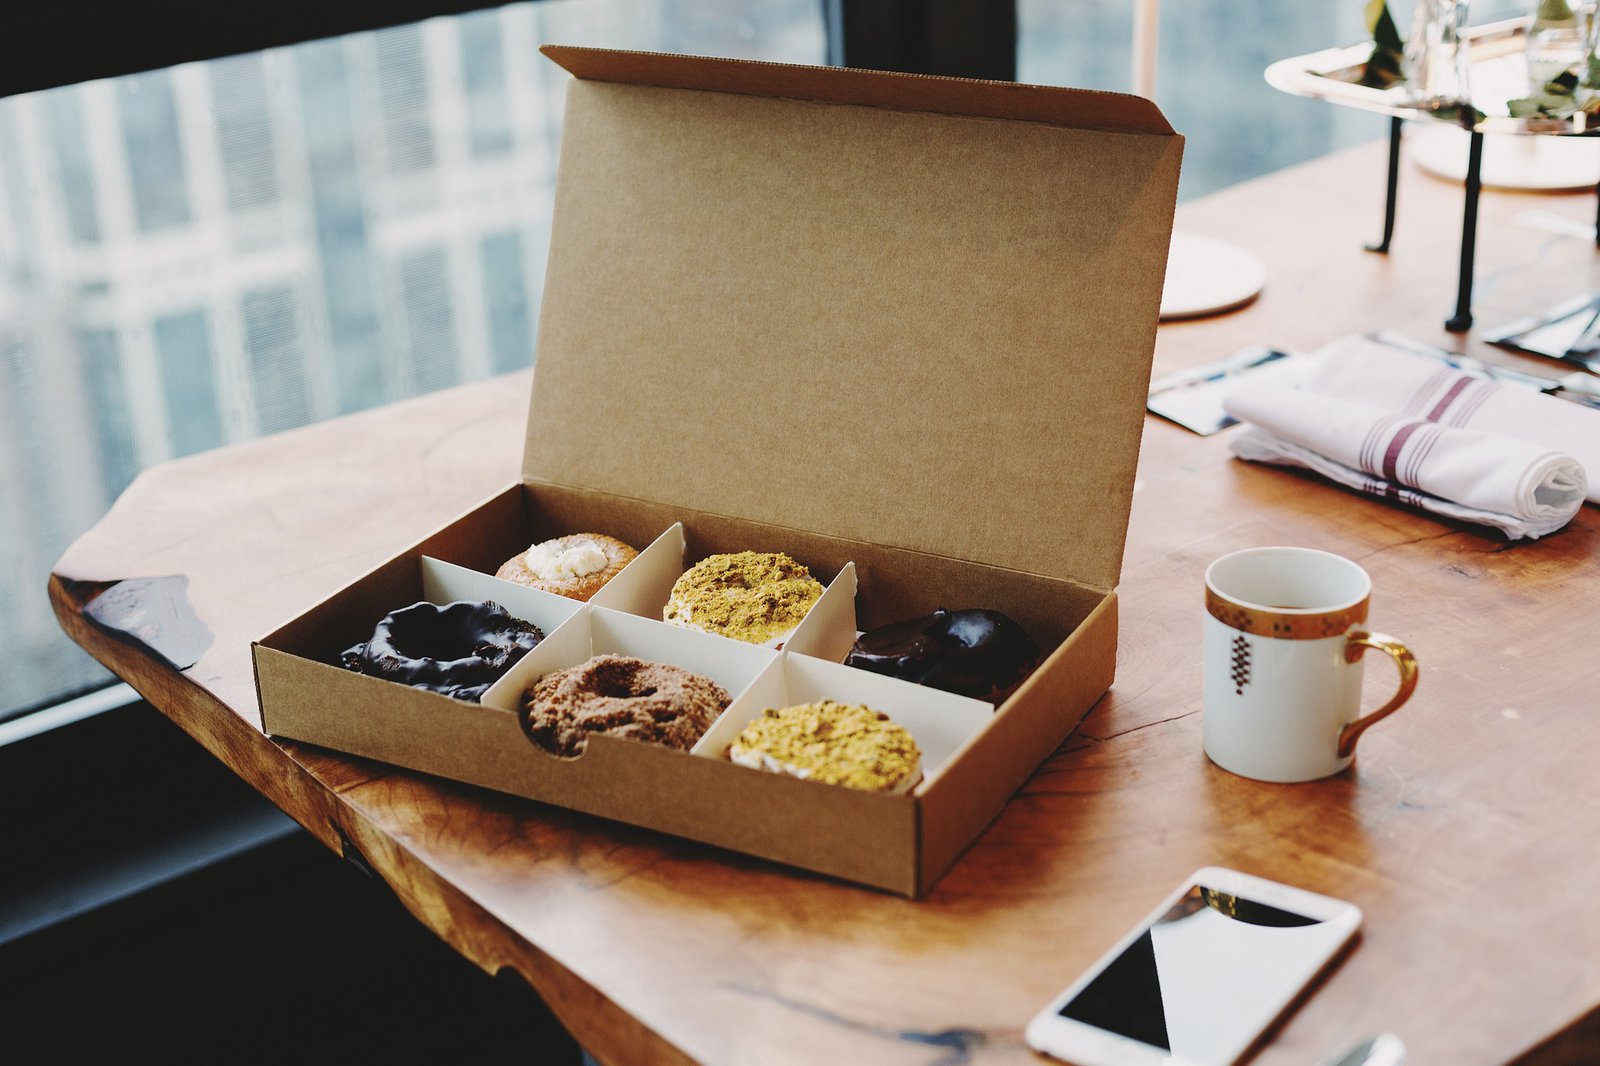 Eine Pappschachtel ist mit sechs Donuts befüllt und liegt auf einem Holztisch. Nebendran liegt ein Telefon und eine Kaffeetasse.